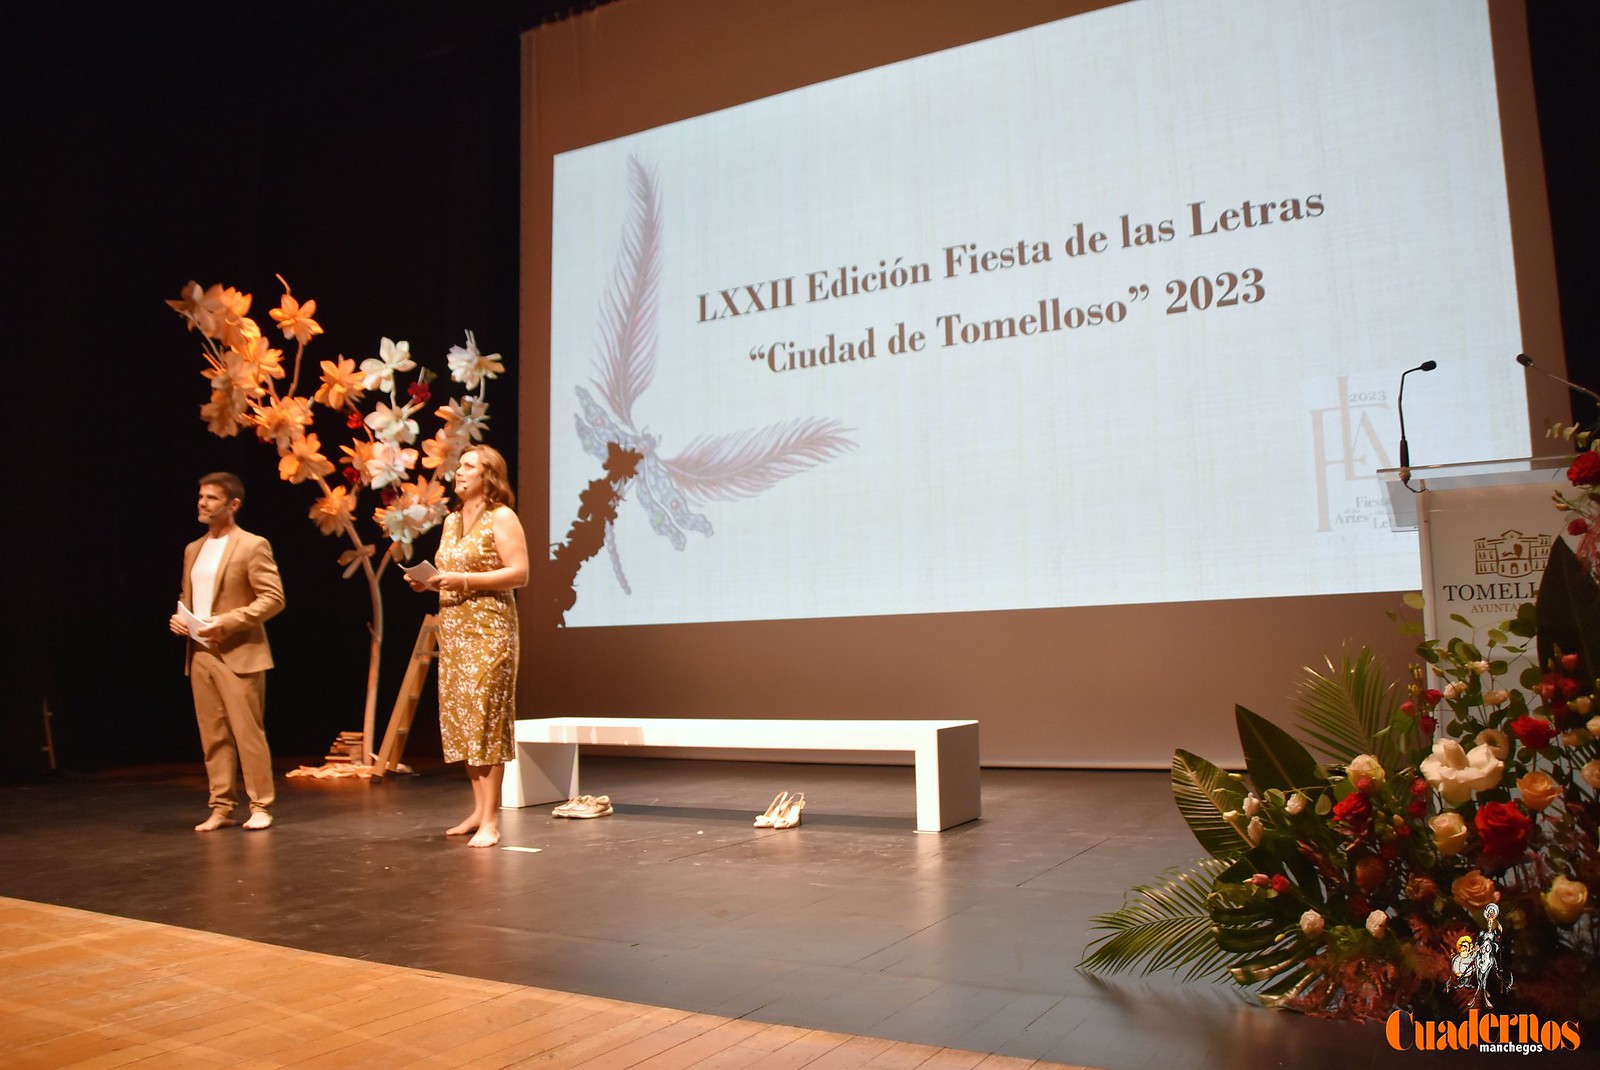 Convocados los Certámenes Literarios de la LXXIII Fiesta de las Letras “Ciudad de Tomelloso”